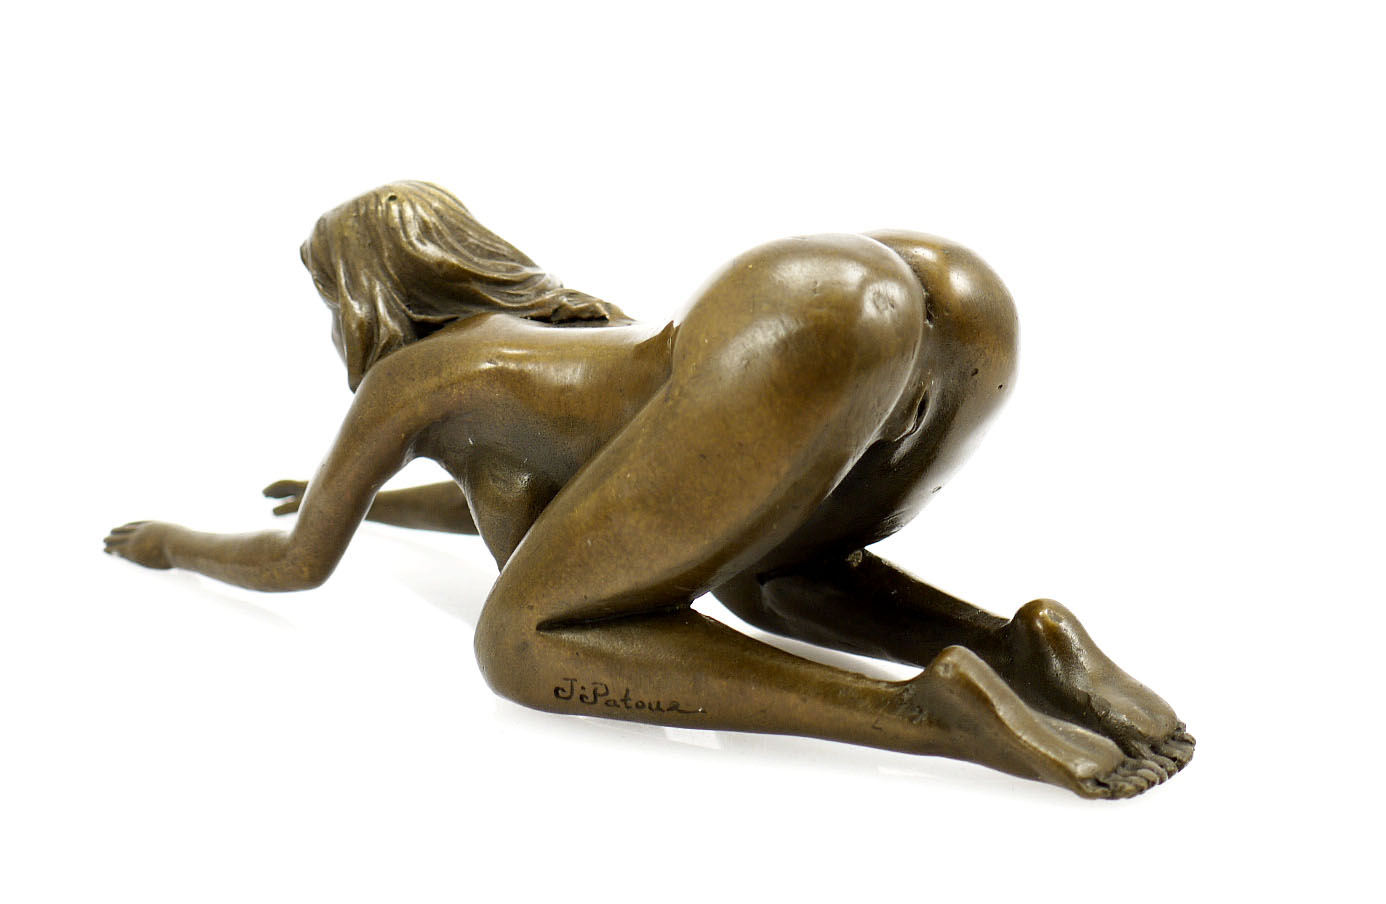 https://www.art-bronze-sculptures.com/media/image/24/df/4a/390_659300ad7e52cf.jpg